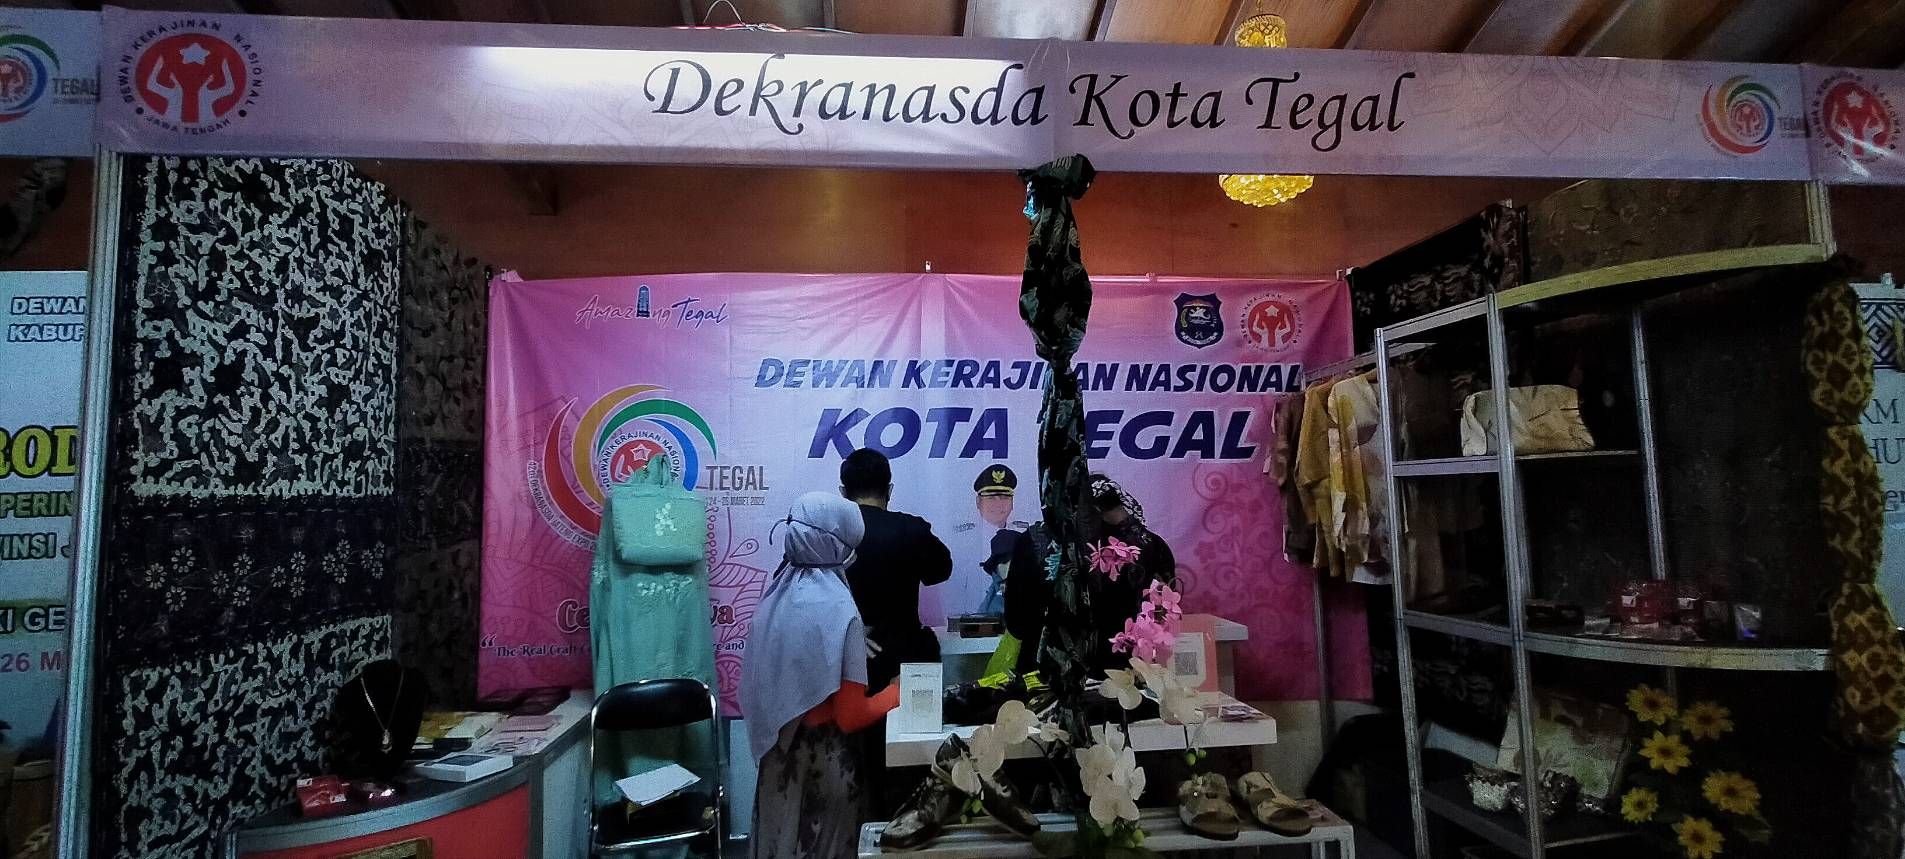 Booth Dekranasda Kota Tegal